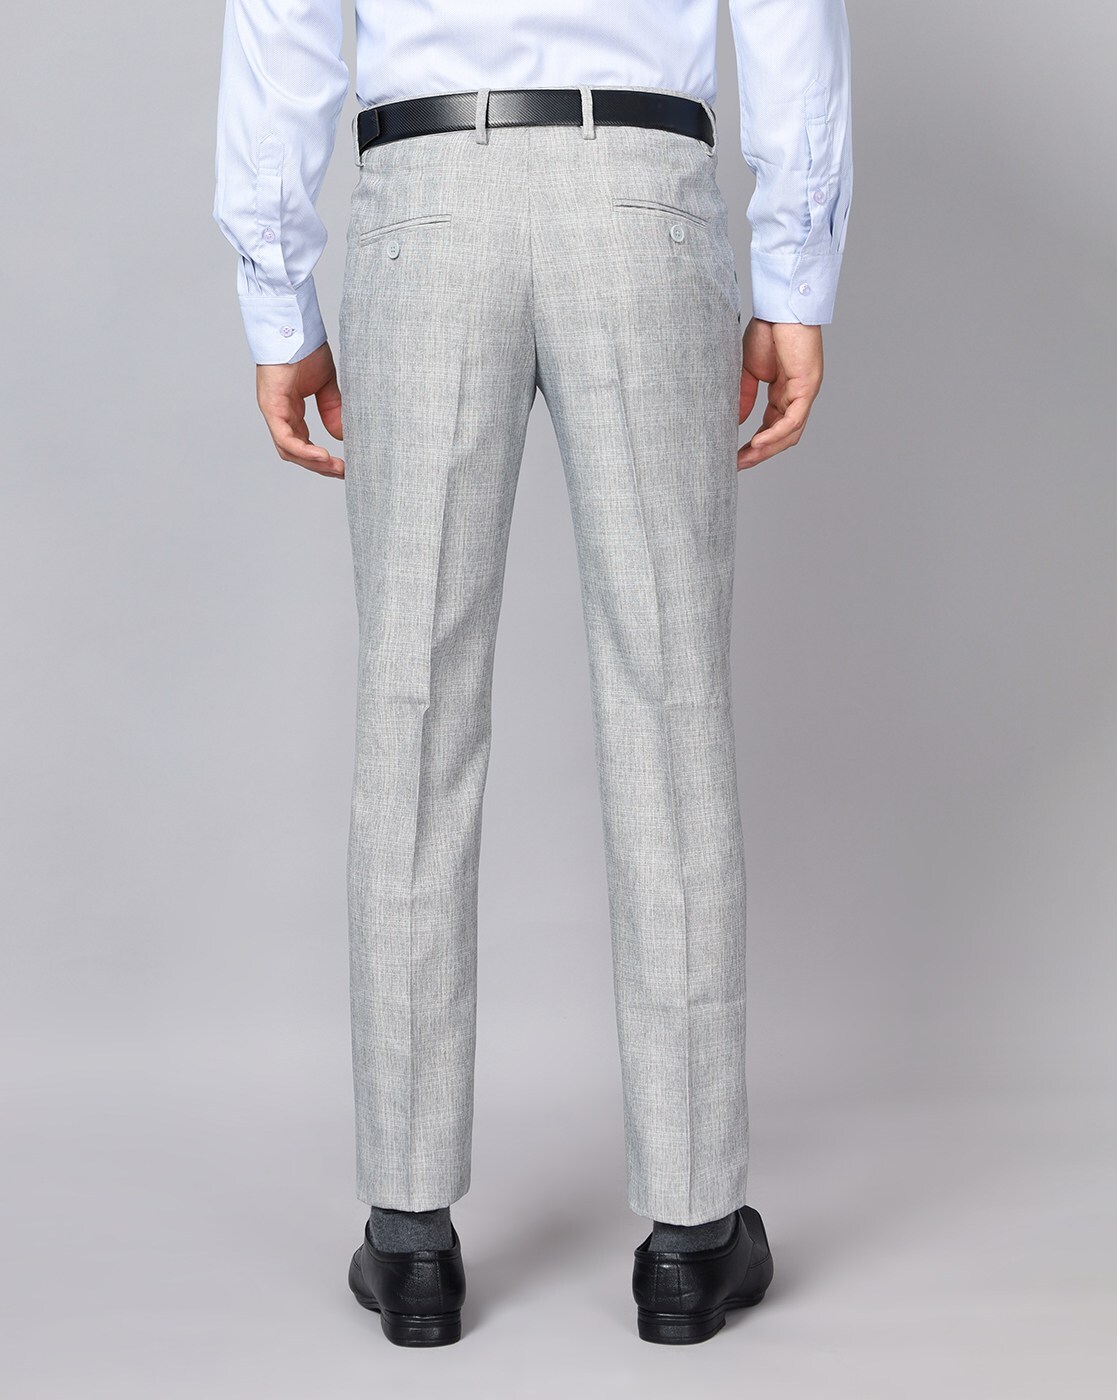 Buy Van Heusen Grey Trousers Online  762768  Van Heusen